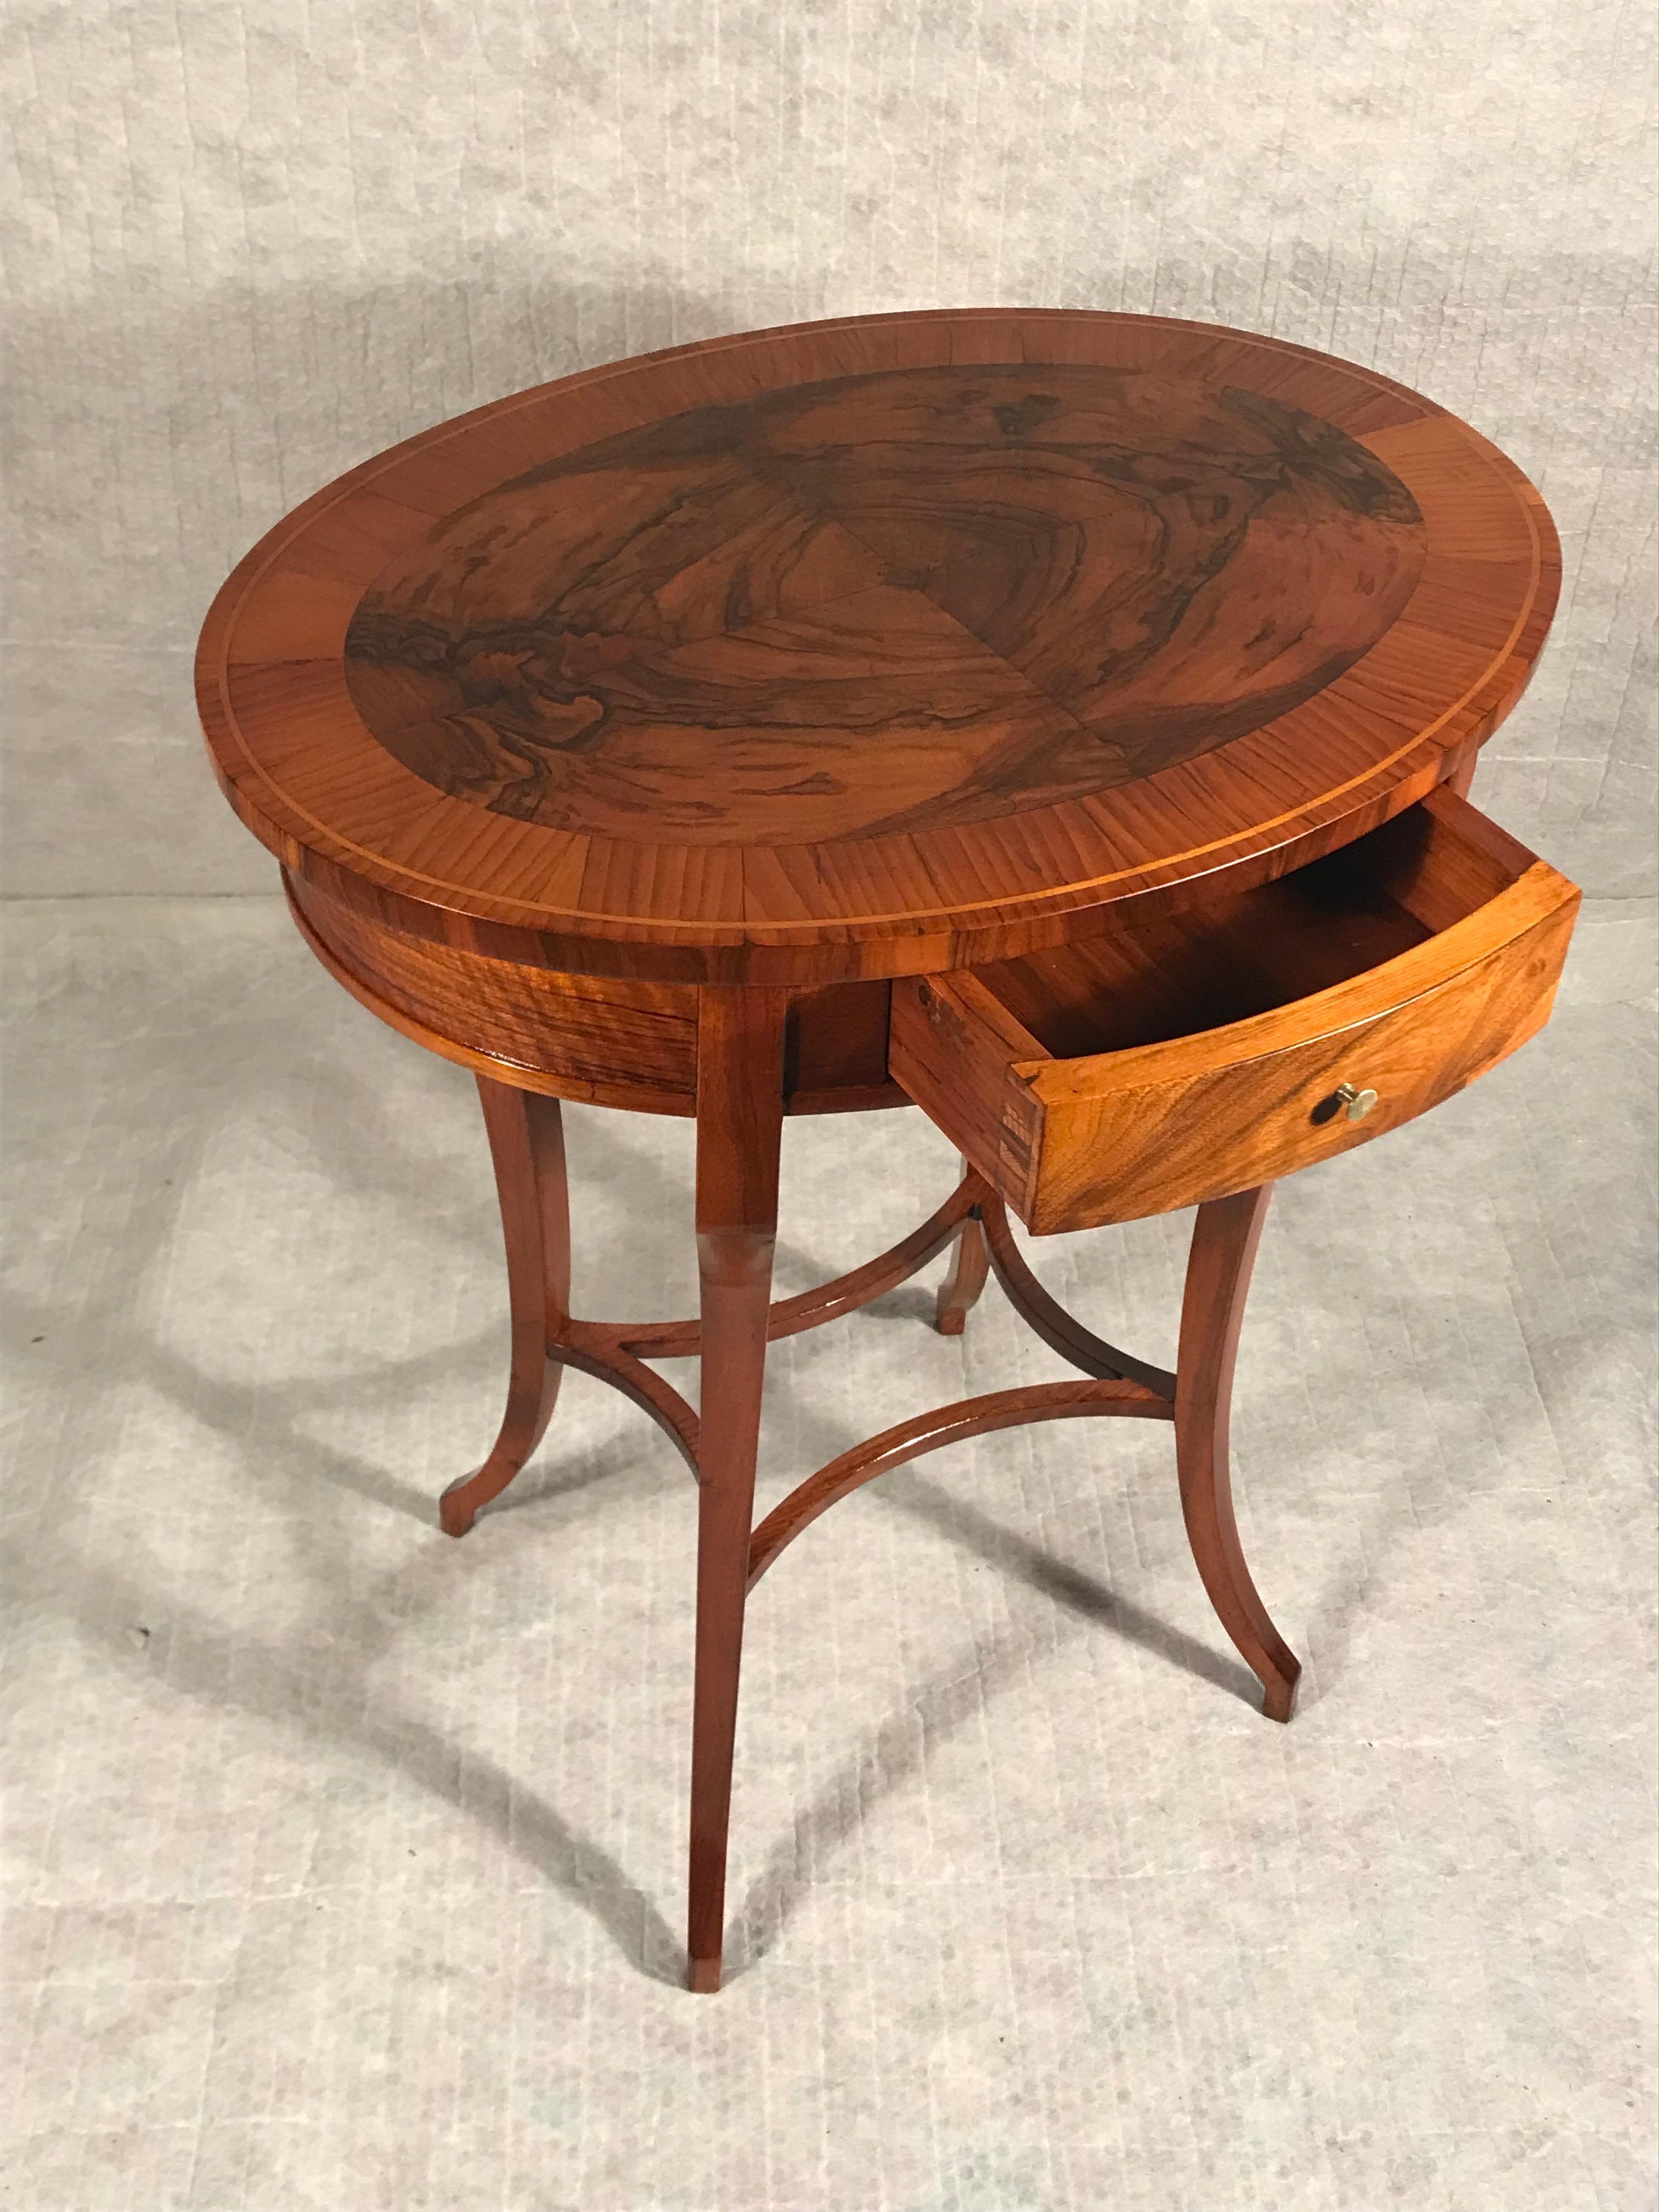 Entdecken Sie den Charme unseres Biedermeier-Beistelltischs im Vintage-Stil mit seinem beeindruckenden Walnussfurnier. Dieser elegante, ovale Tisch mit zentraler Schublade stammt aus Süddeutschland und wurde 1820 gefertigt. Er ist ein zeitloses